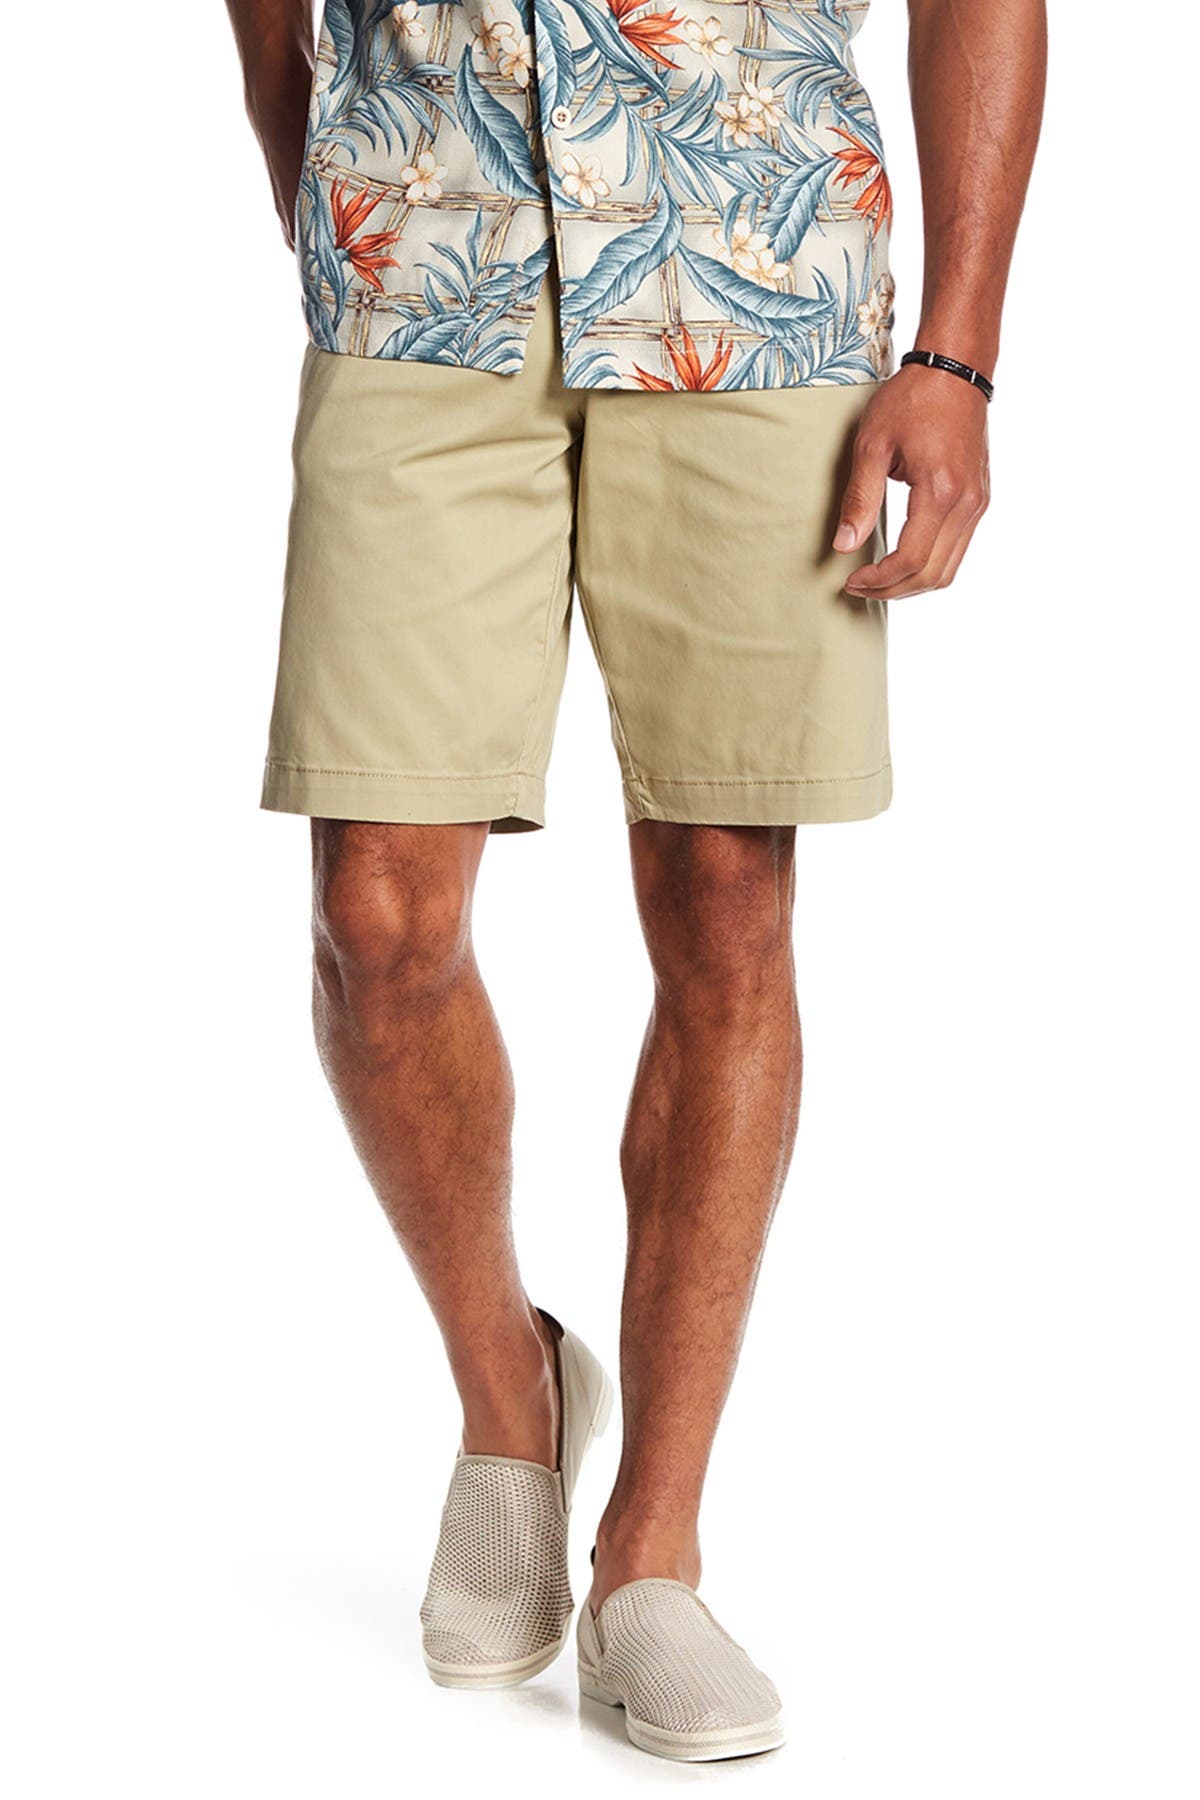 tommy bahama top sail shorts